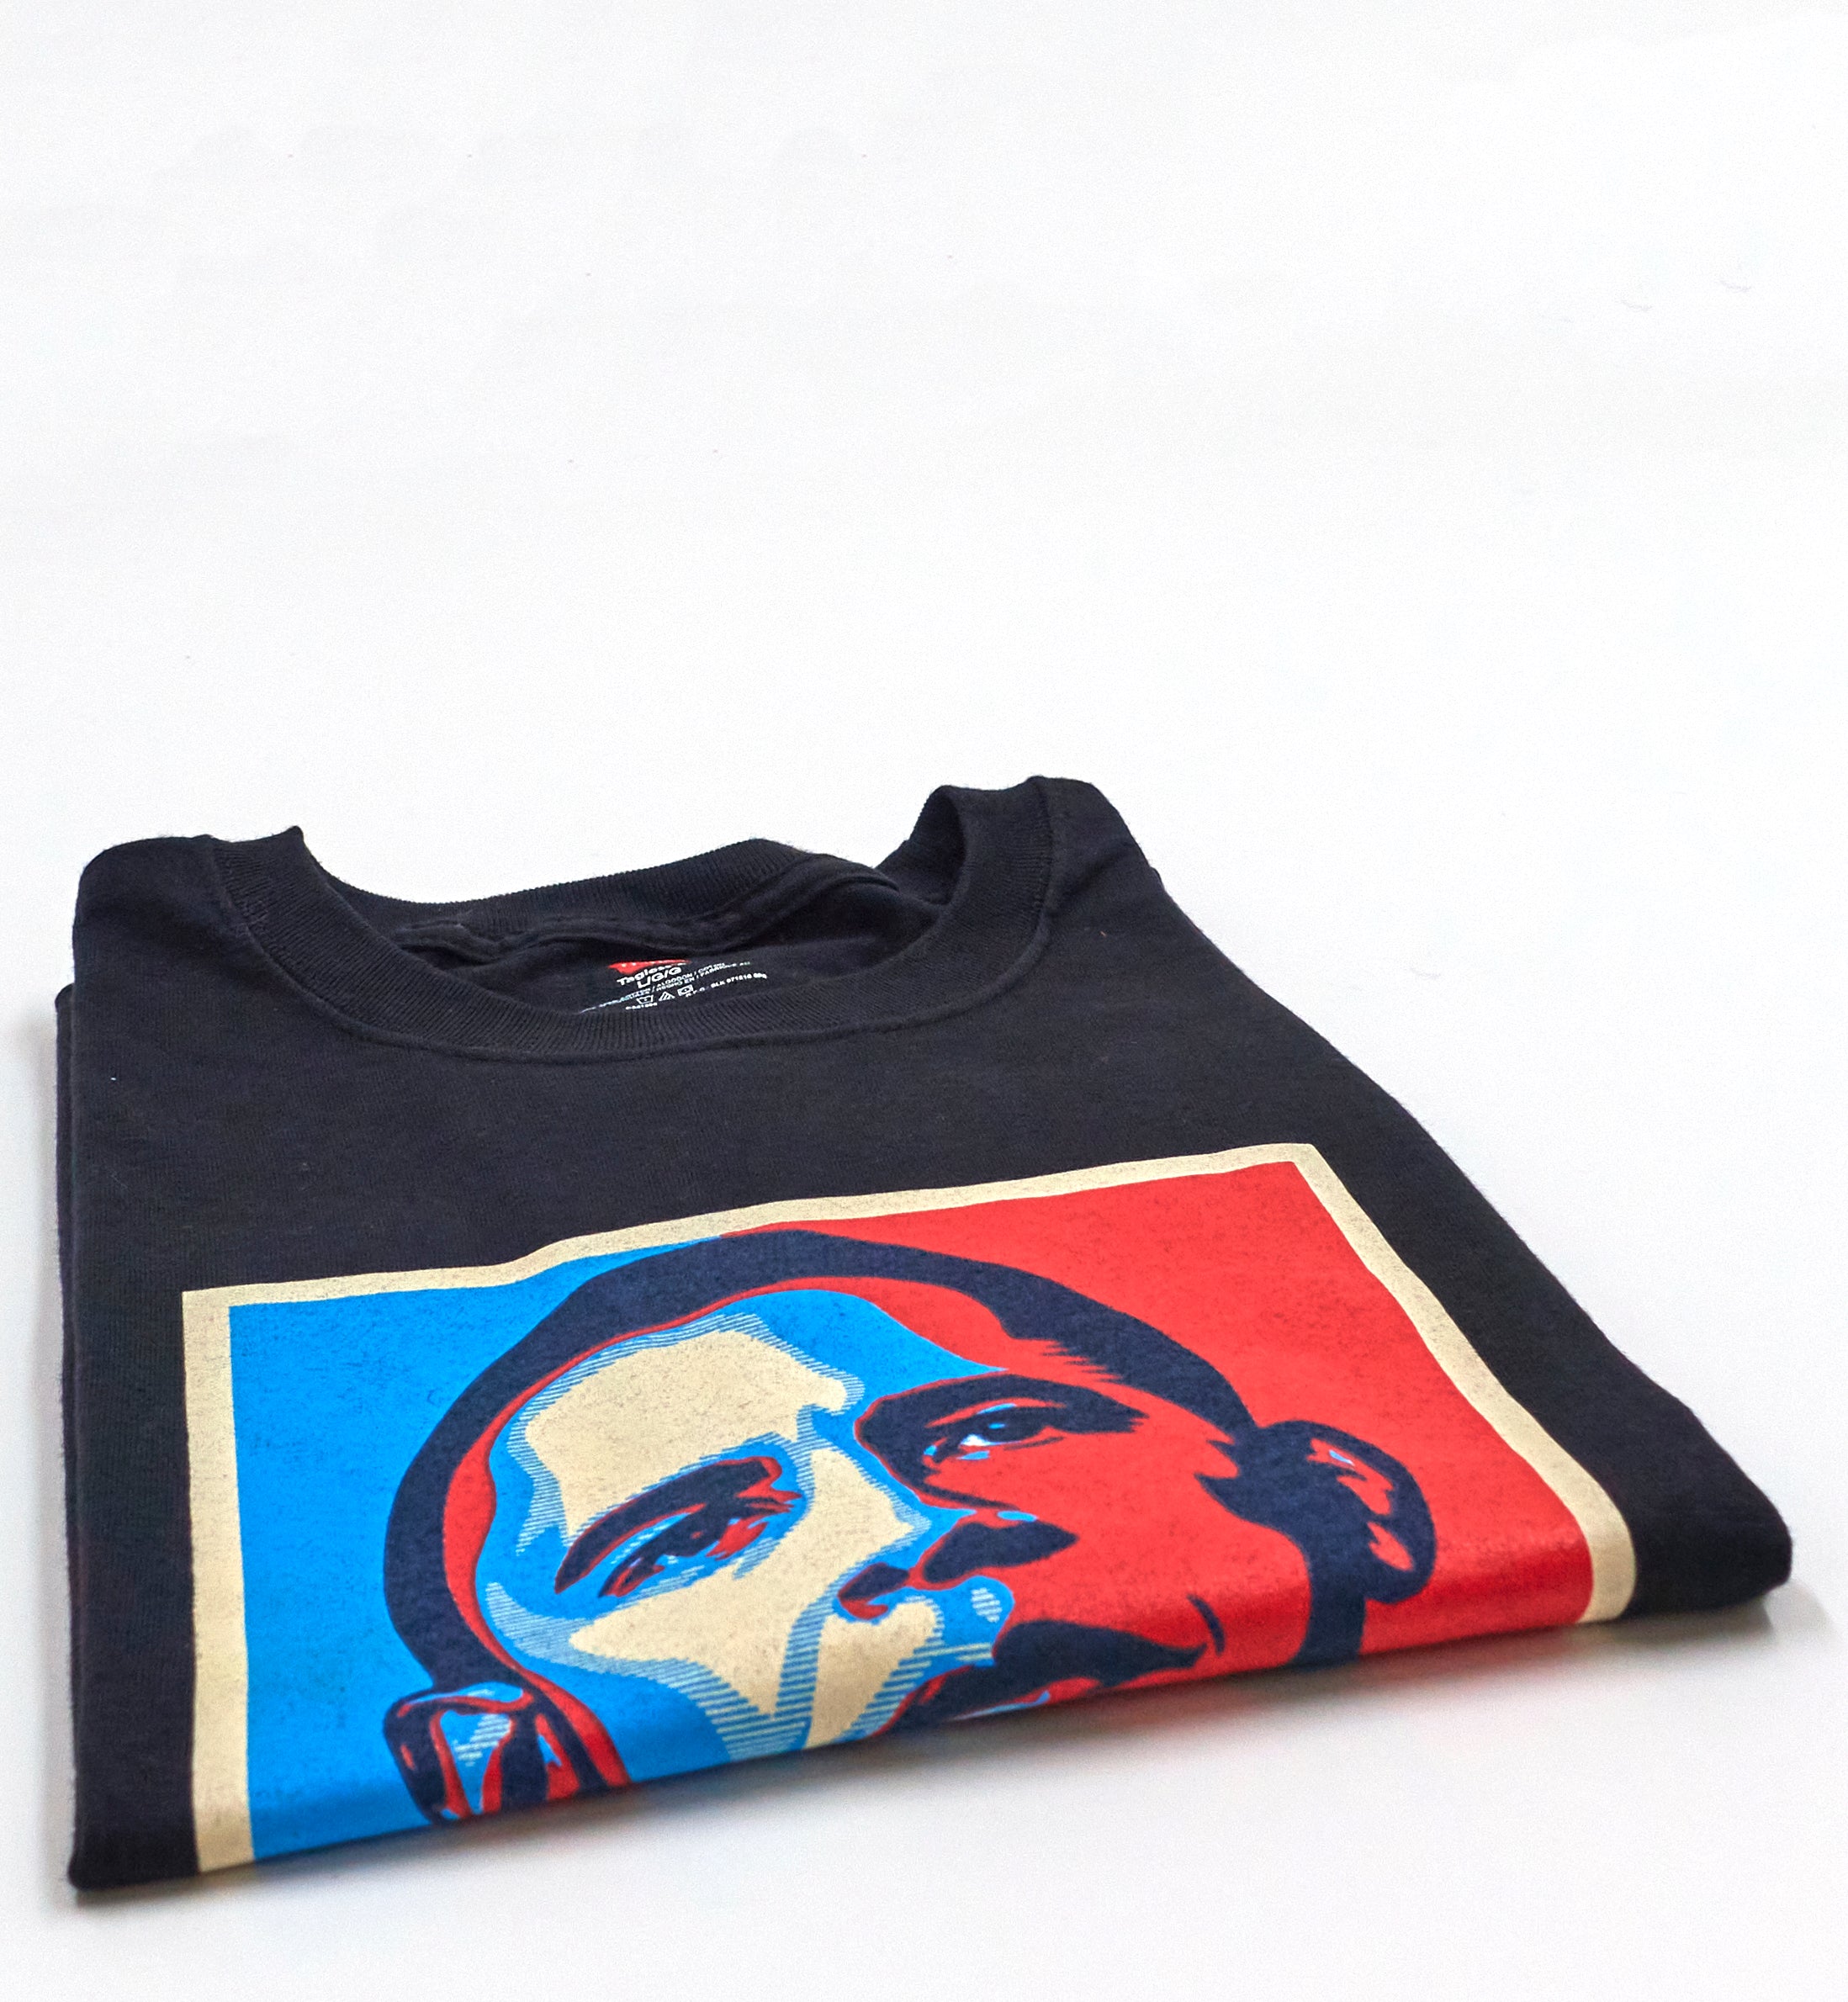 Shepard Fairey - Original Barack Obama Hope Fundraising Contribution Gift Shirt Size Large